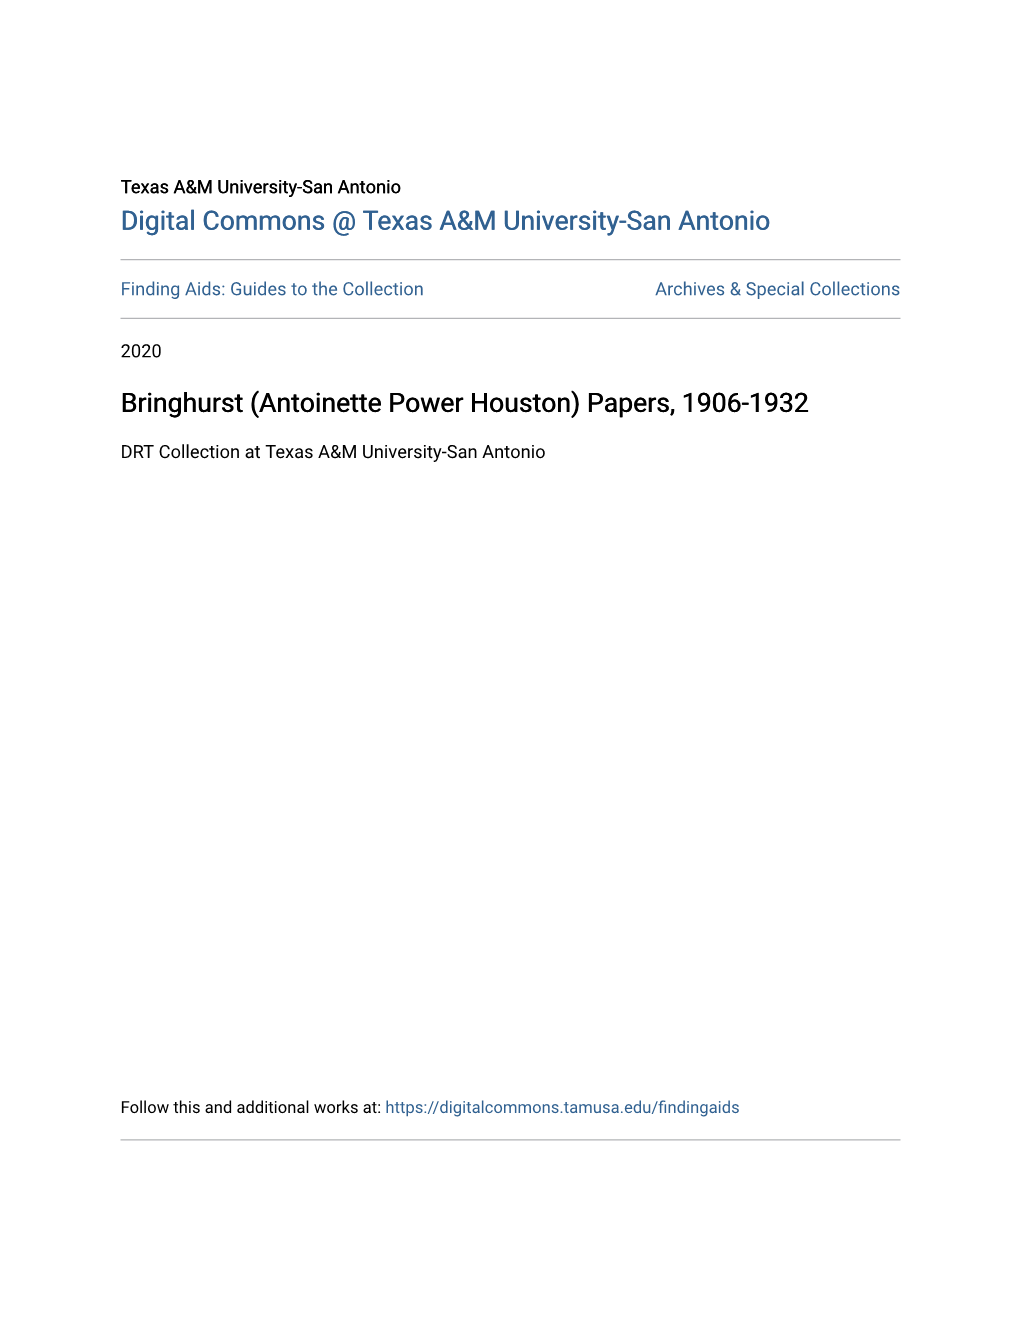 (Antoinette Power Houston) Papers, 1906-1932